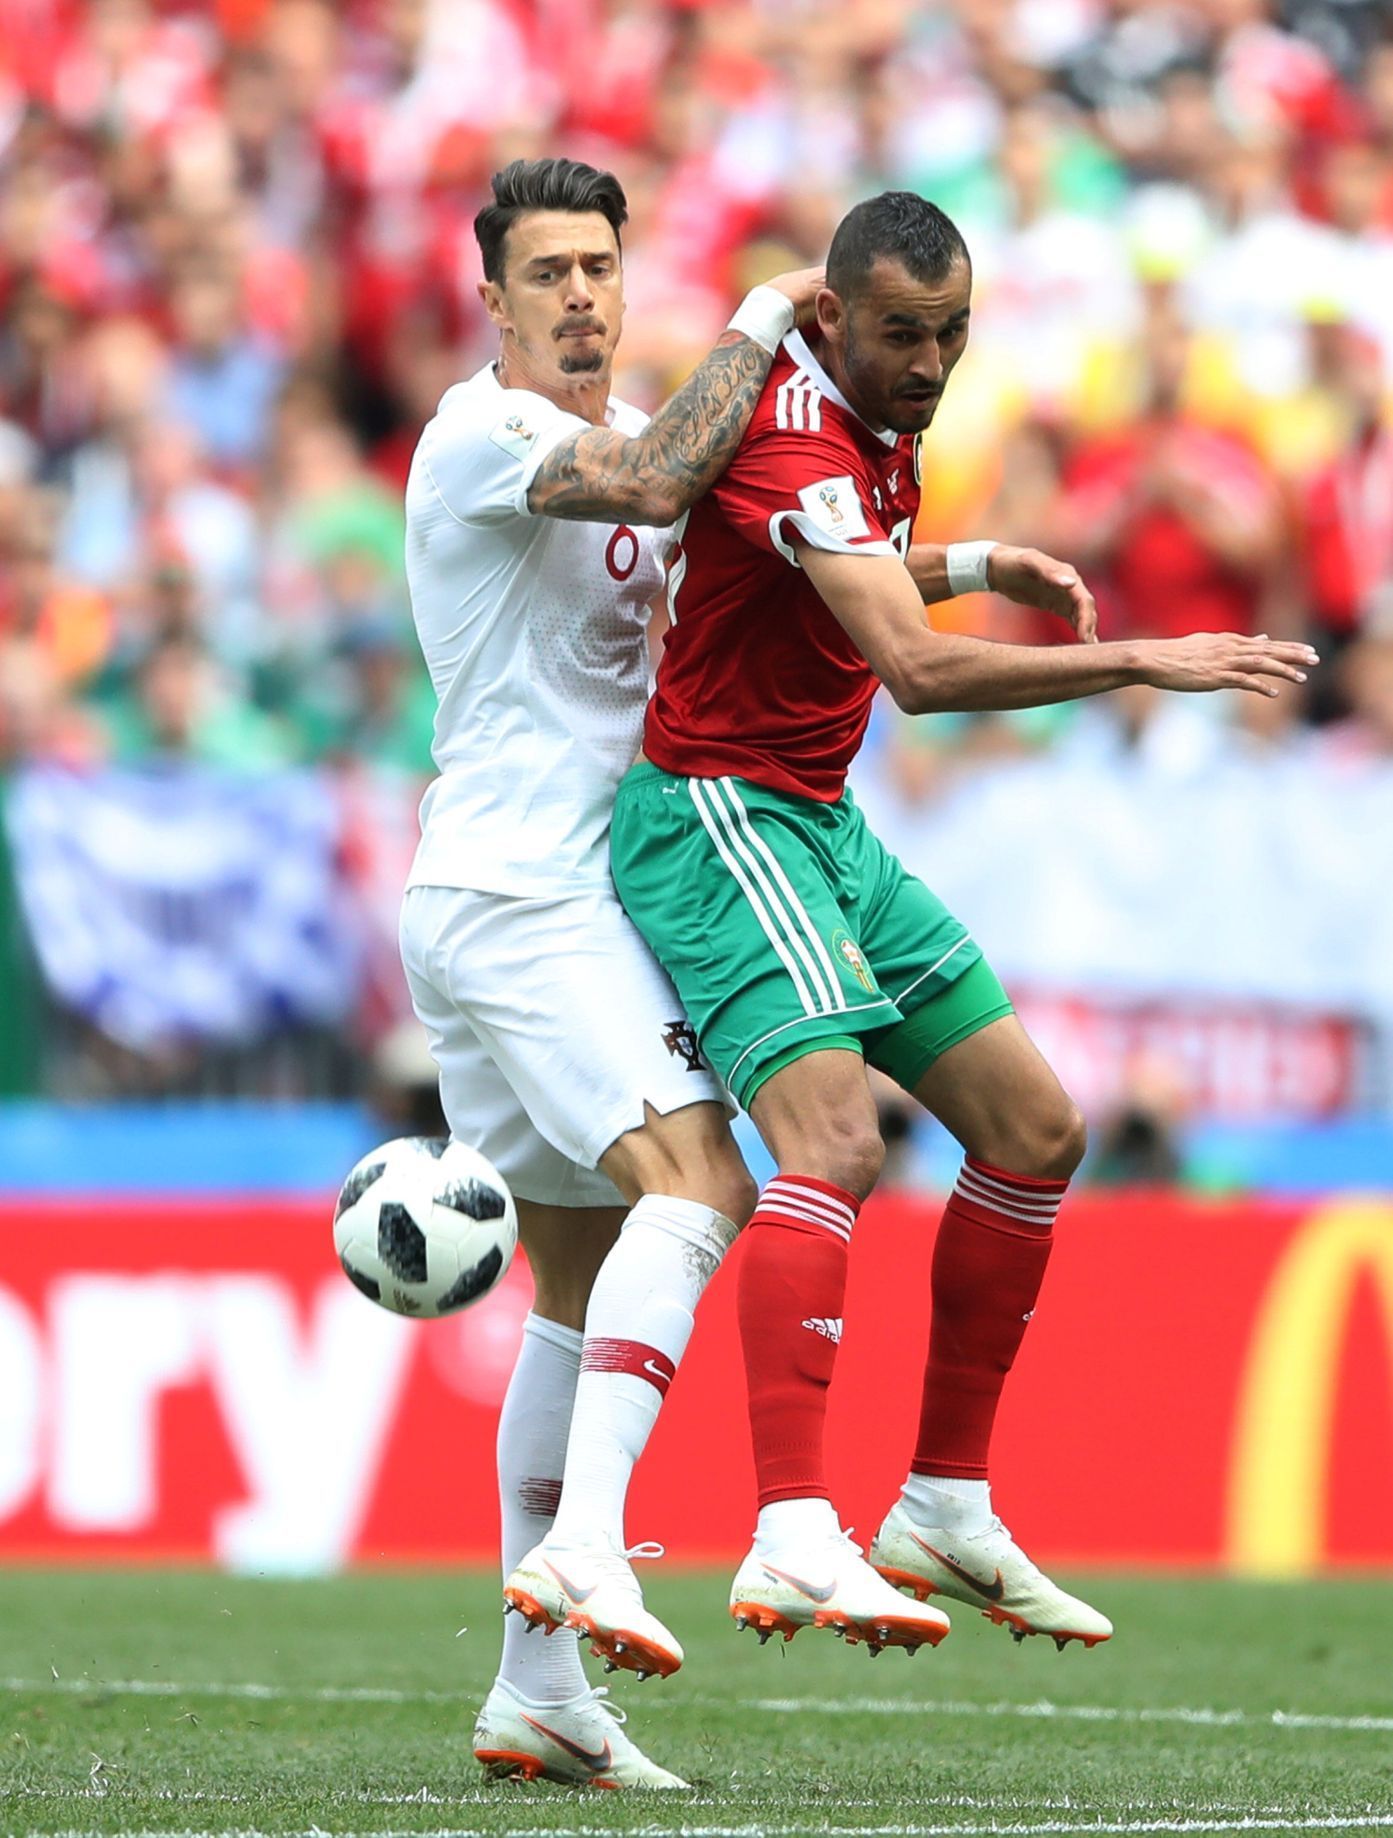 José Fonte a Chálid Butaíb v zápase Portugalsko - Maroko na MS 2018